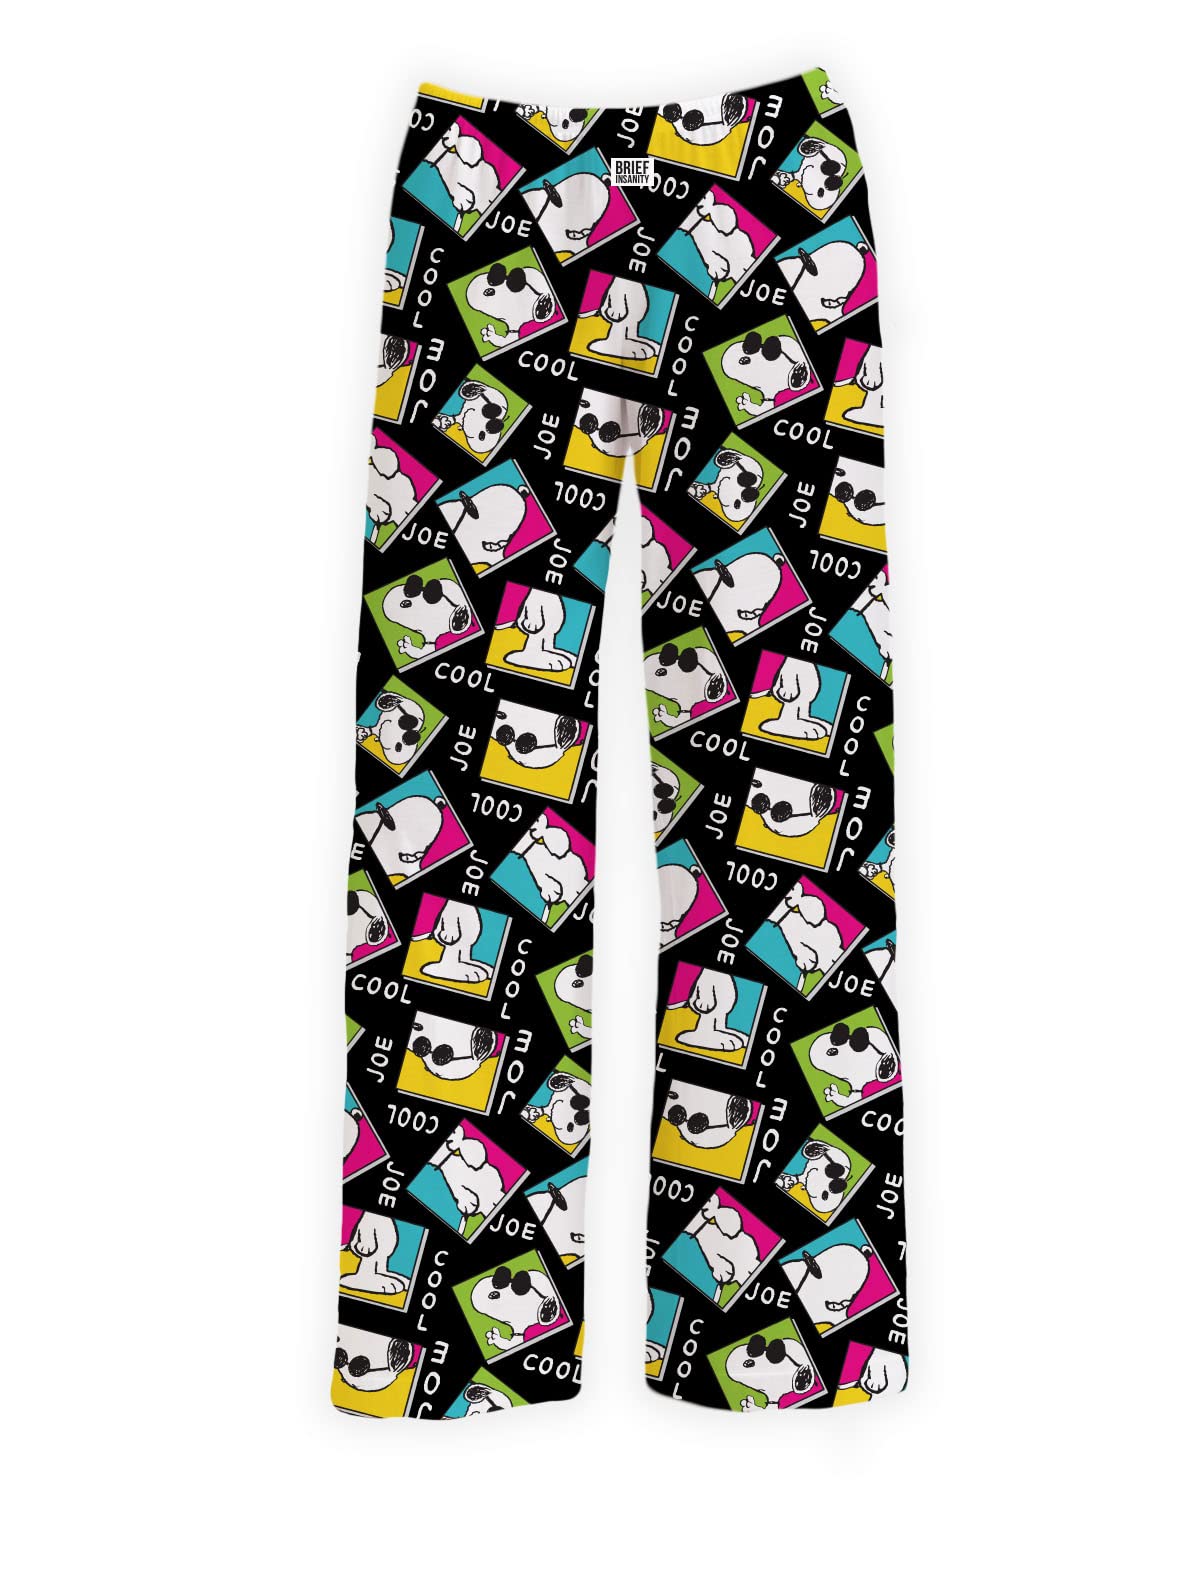 BRIEF INSANITY Snoopy Joe Cool Retro Pajama Lounge Pants (NEW)